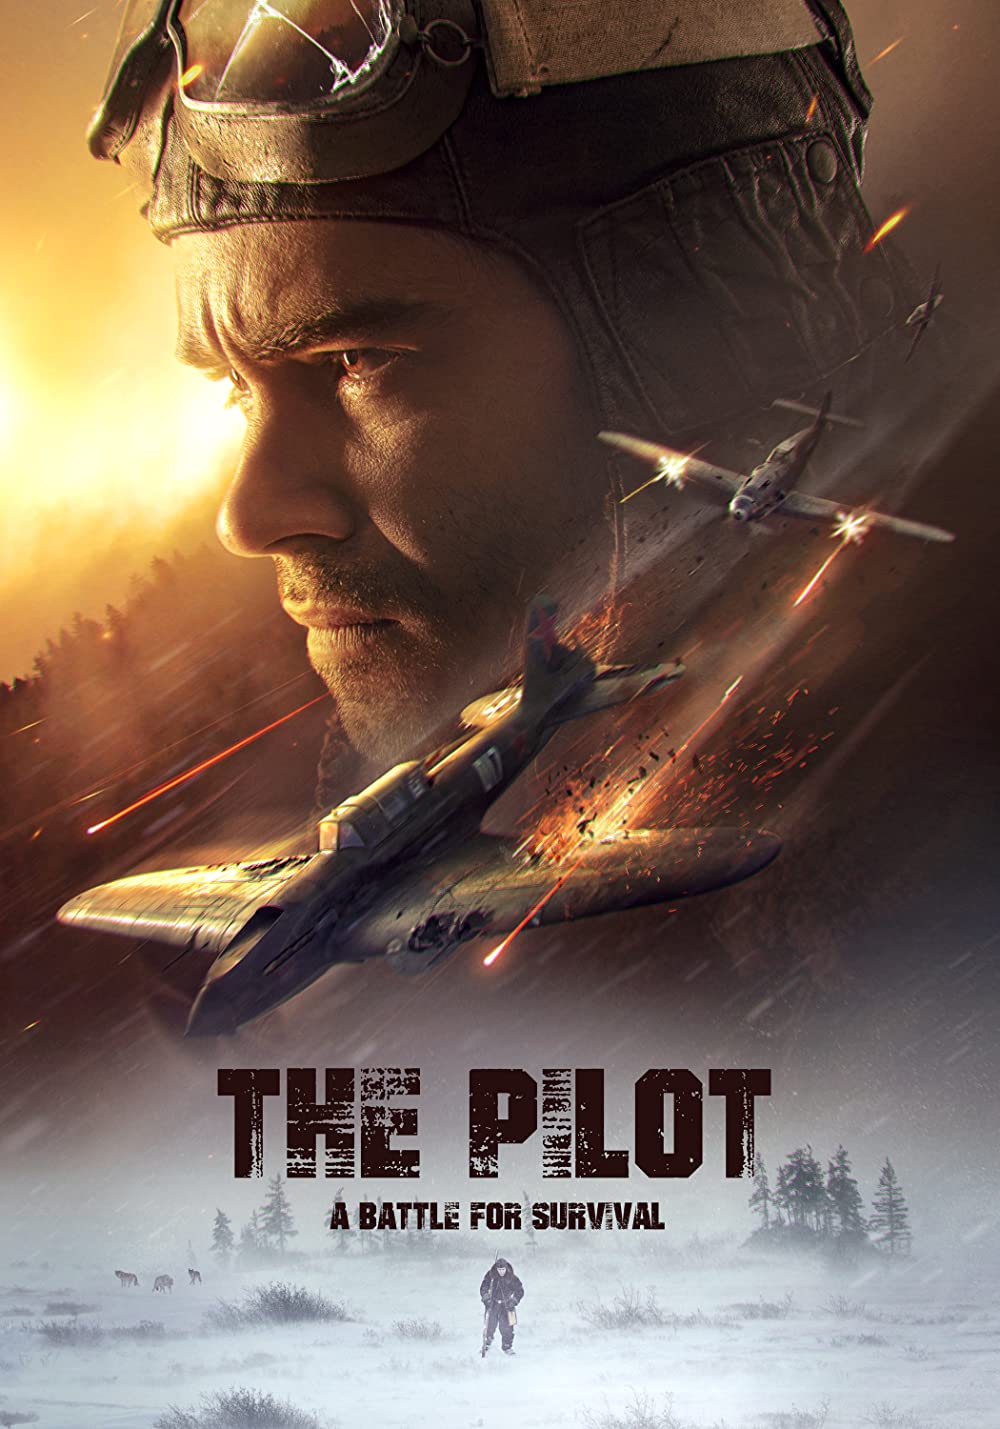 The Pilot. A Battle for Survival / Ljotcik (2021)[WebRip]HEVC] = CSFD 84%